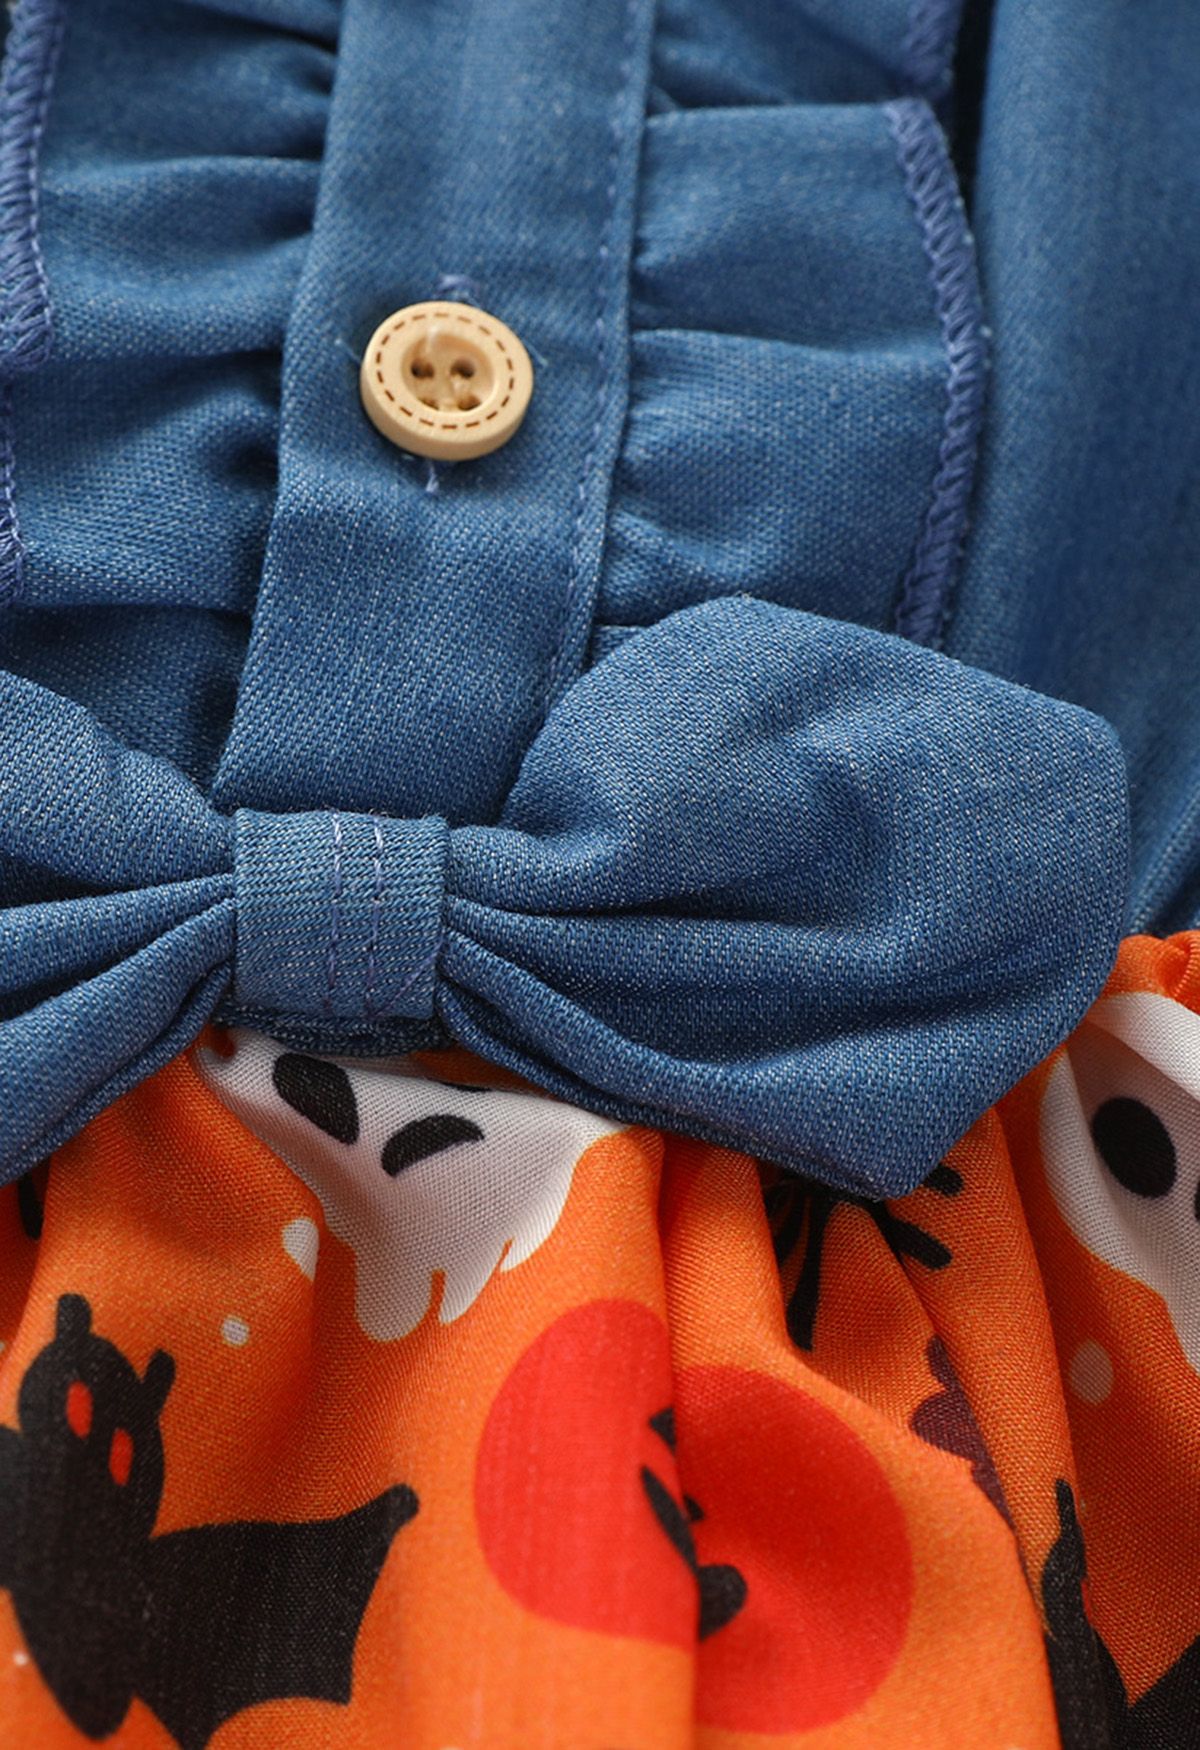 Vestido vaquero con lazo empalmado para fiesta de Halloween para niños en naranja